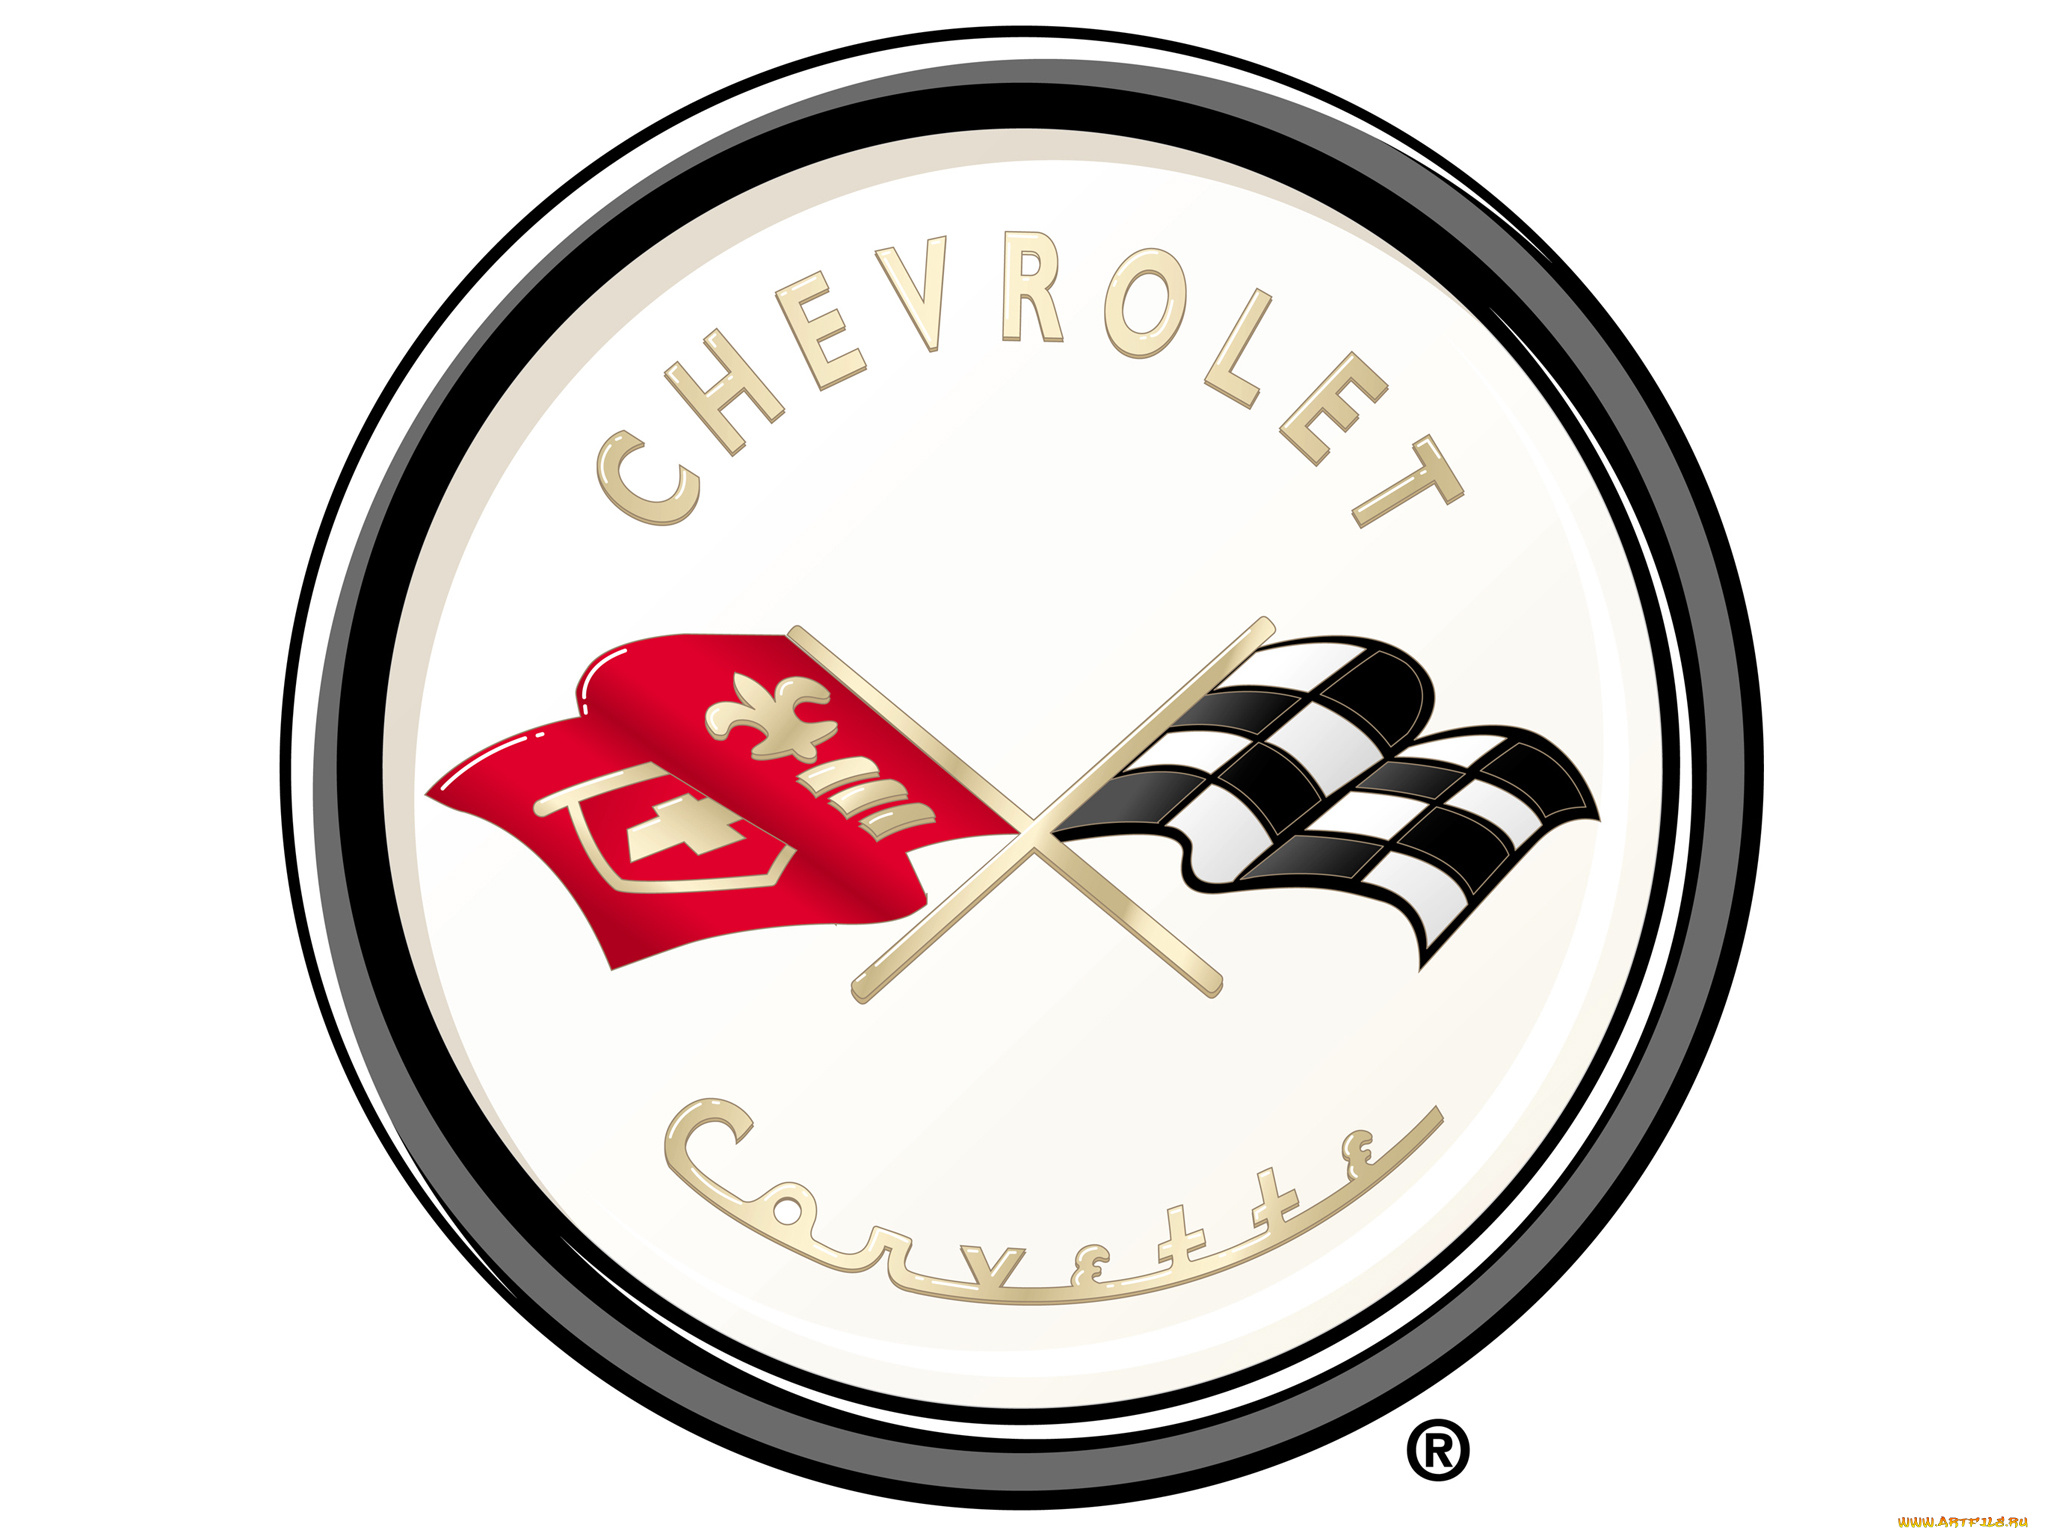 бренды, авто-мото, , chevrolet, флаги, логотип